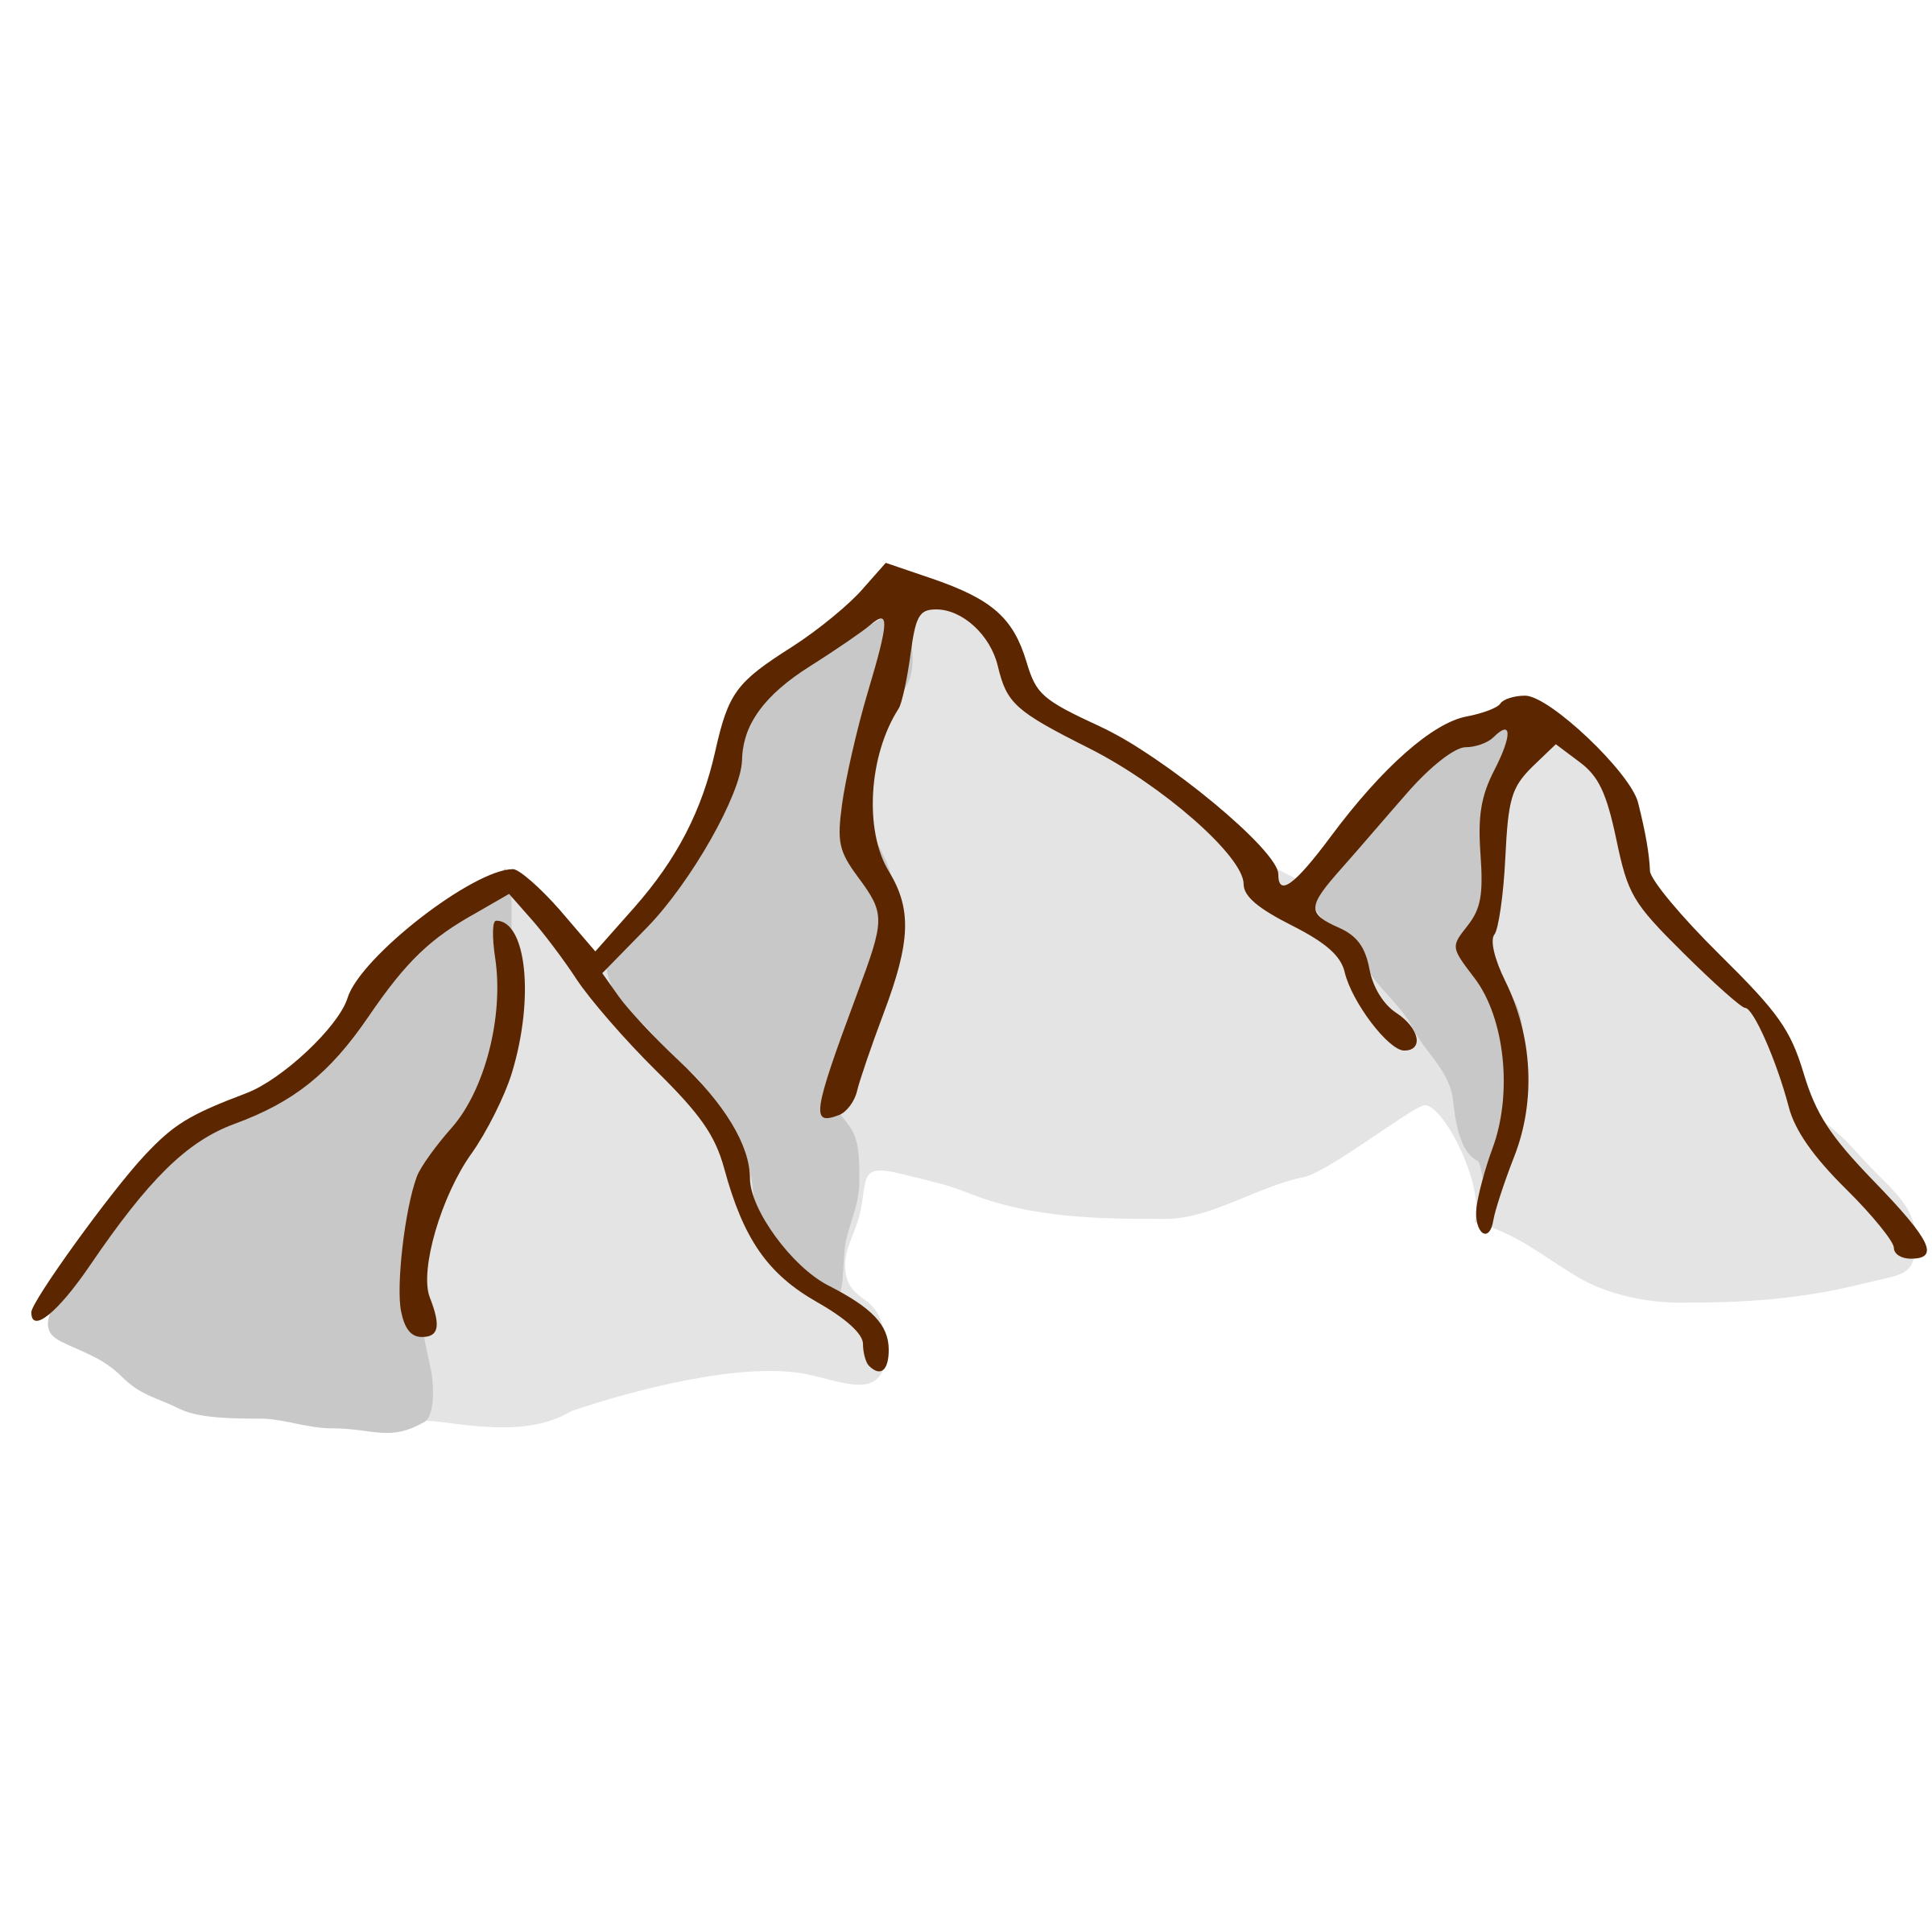 Nicubunu RPG Map Symbols Mountains 4 